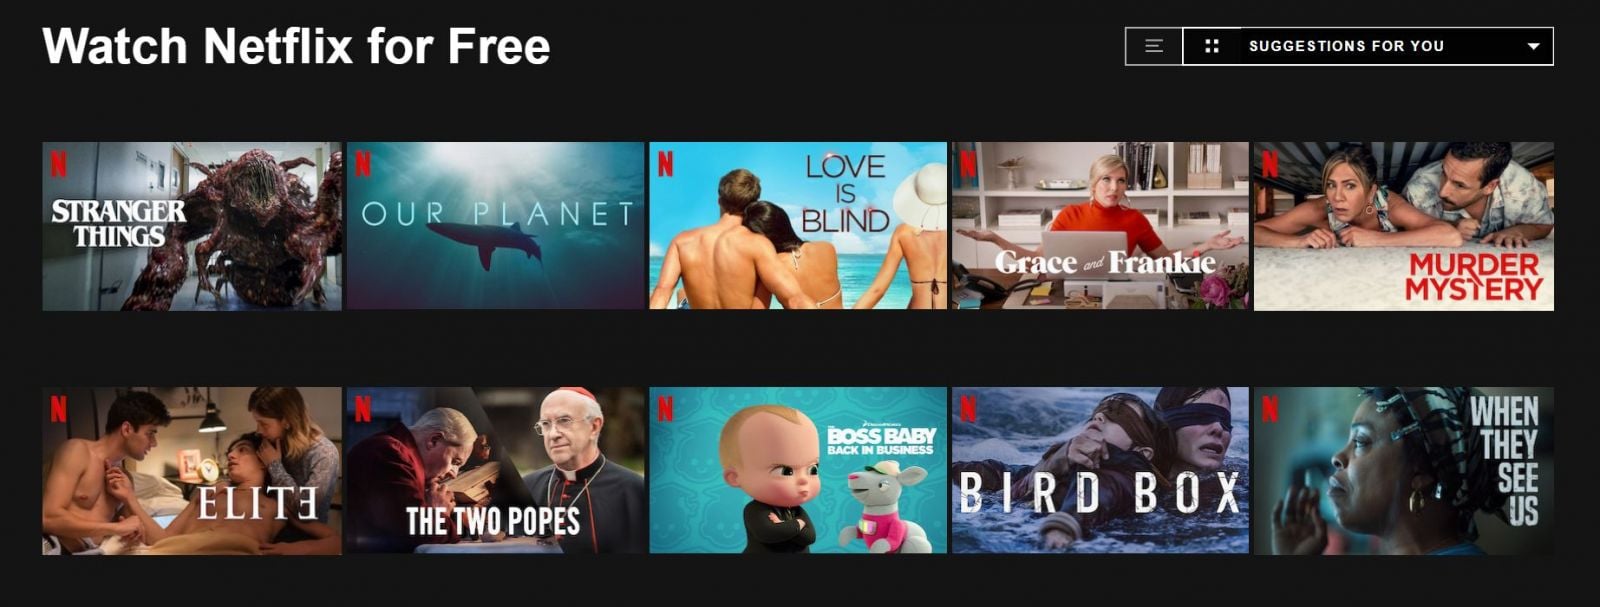 Netflix začína ponúkať filmy aj seriály zadarmo. Chce tak navnadiť ľudí, aby si službu predplatili